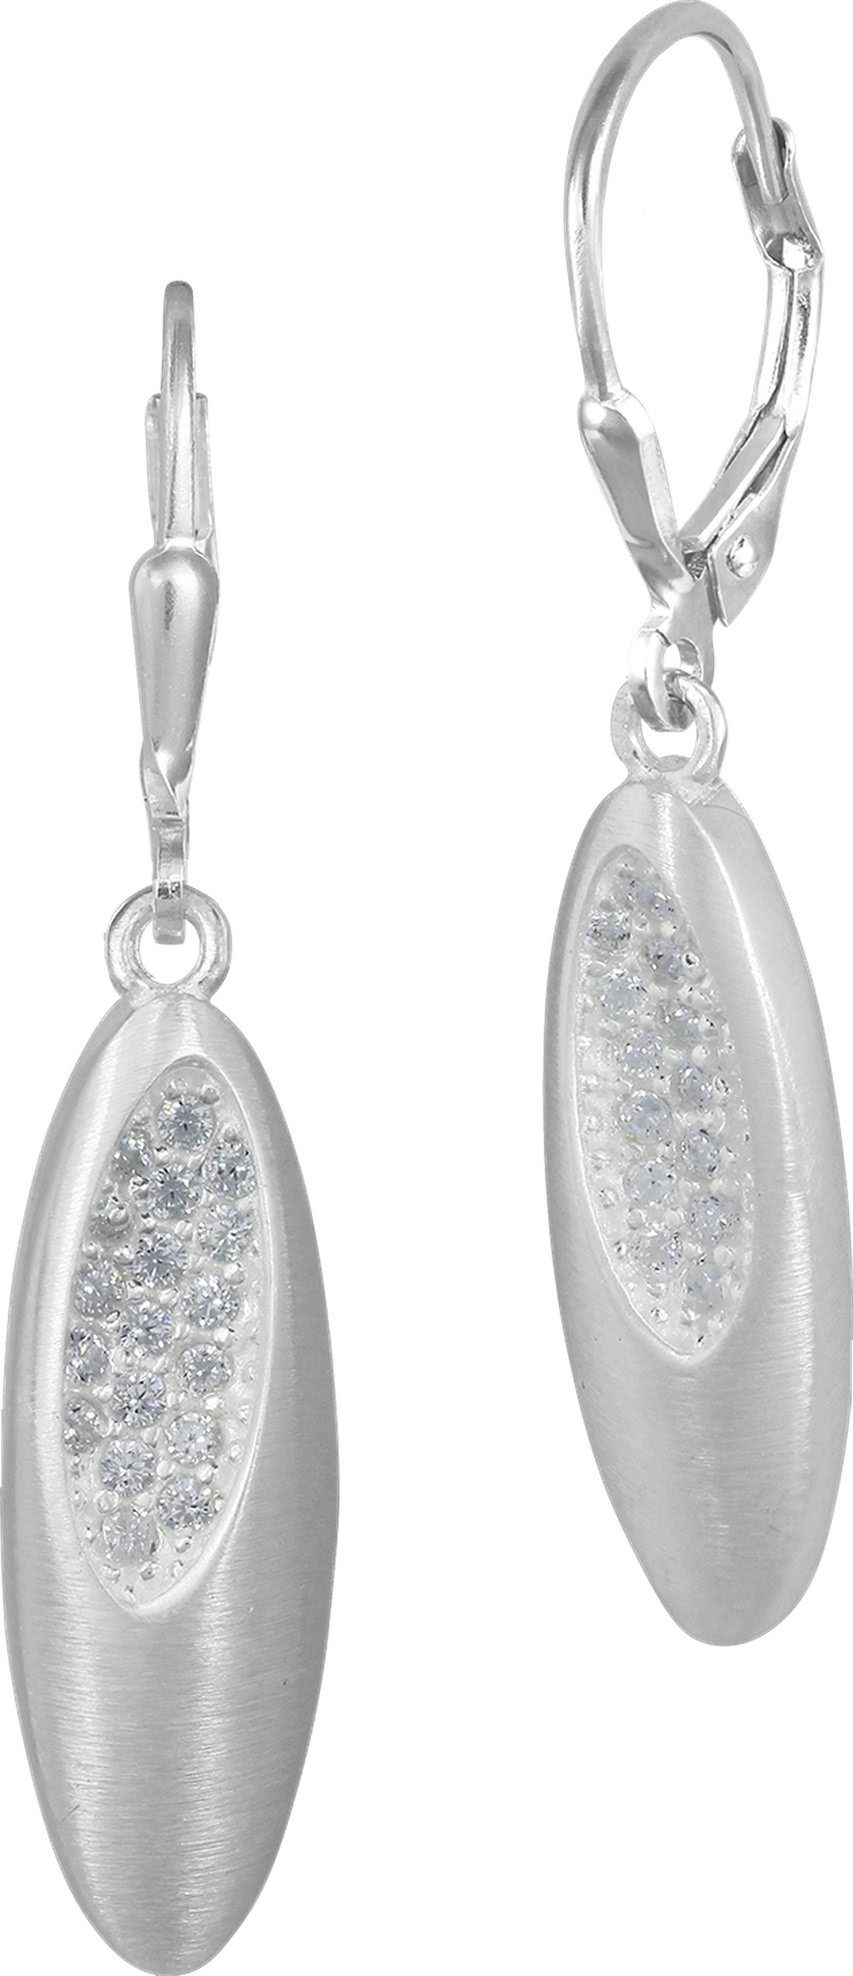 SilberDream Paar Ohrhänger SilberDream Ohrringe für Damen 925 Silber (Ohrhänger), Damen Ohrhänger oval aus 925 Sterling Silber, Farbe: silber, weiß